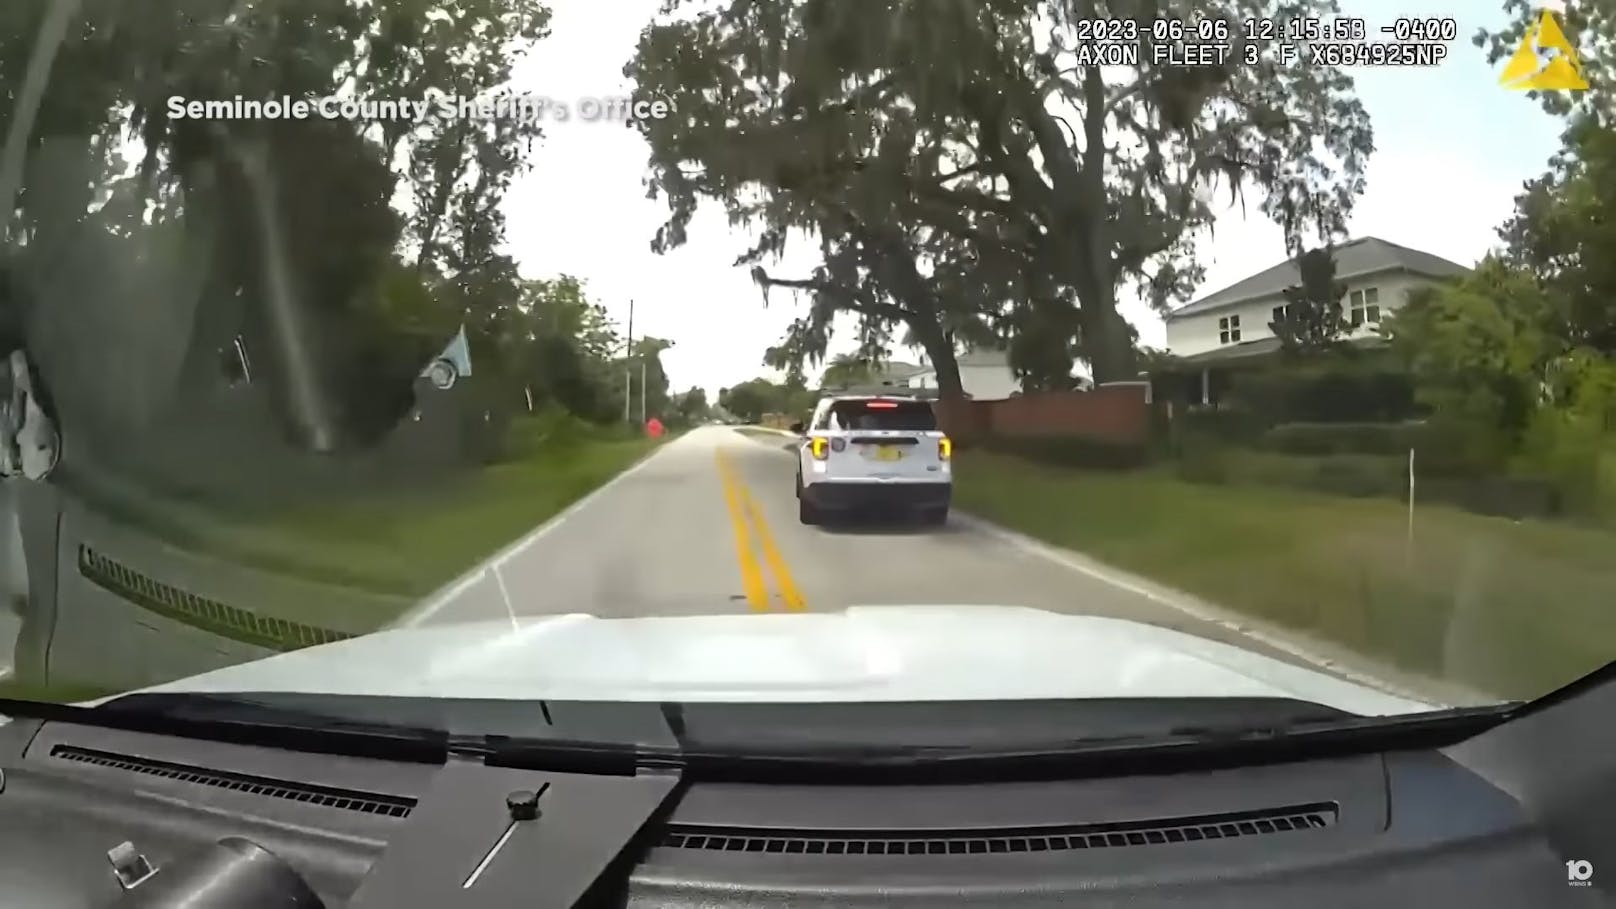 Als ein Polizeiauto ohne Blaulicht mit völlig überhöhter Geschwindigkeit an ihm vorbei raste, nahm der Sheriff-Stellvertreter von Seminole County, FL, sofort die Verfolgung auf.